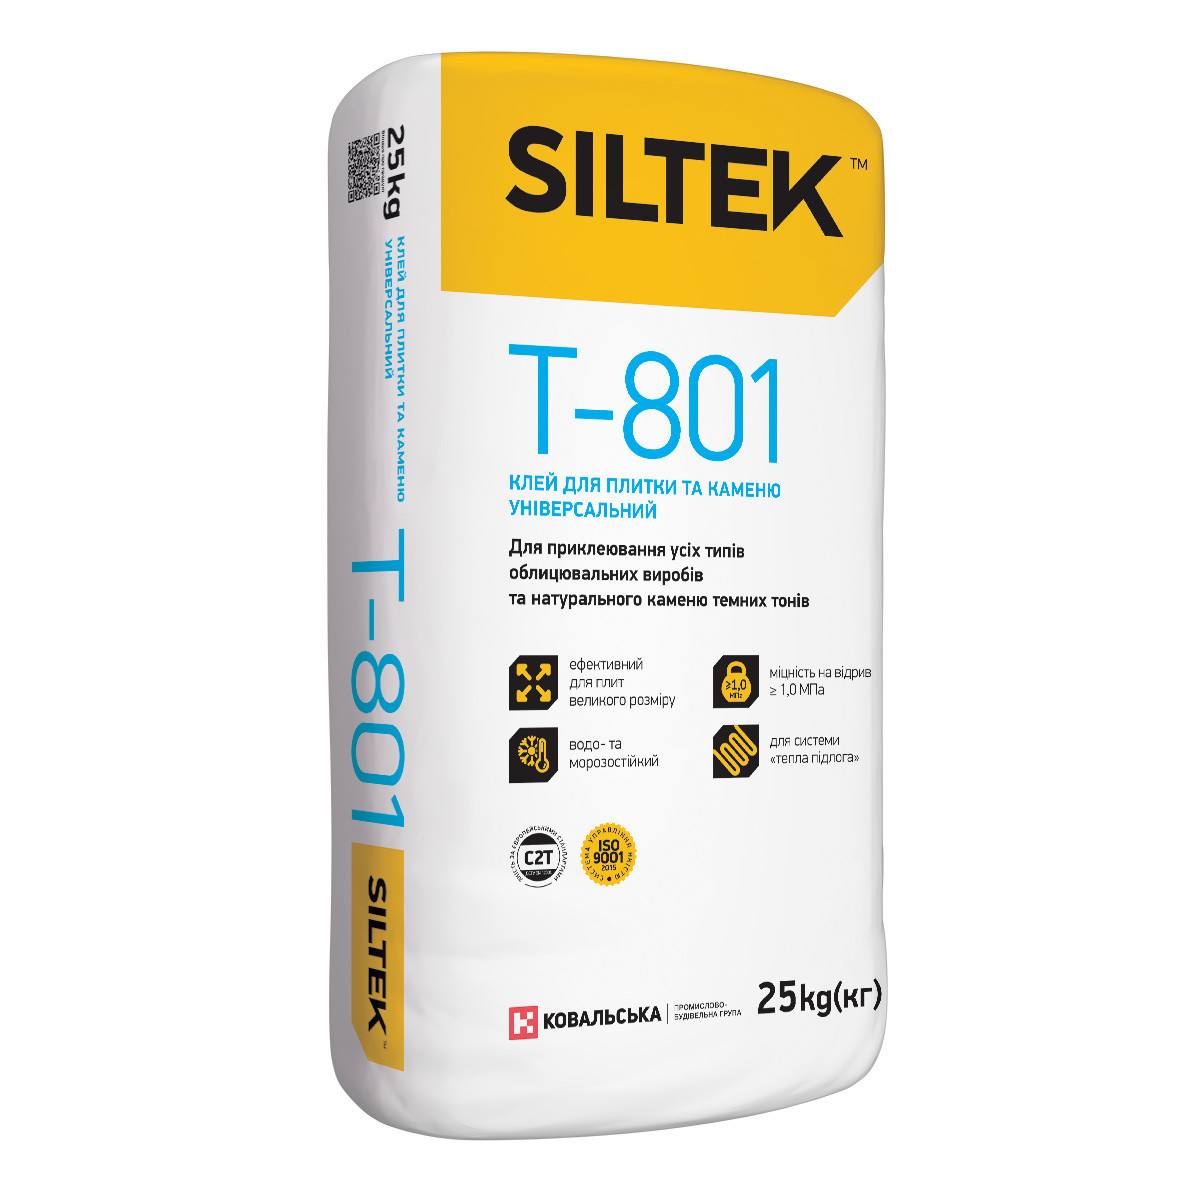 SILTEK Т-801 Клей для плитки та каменю універсальний